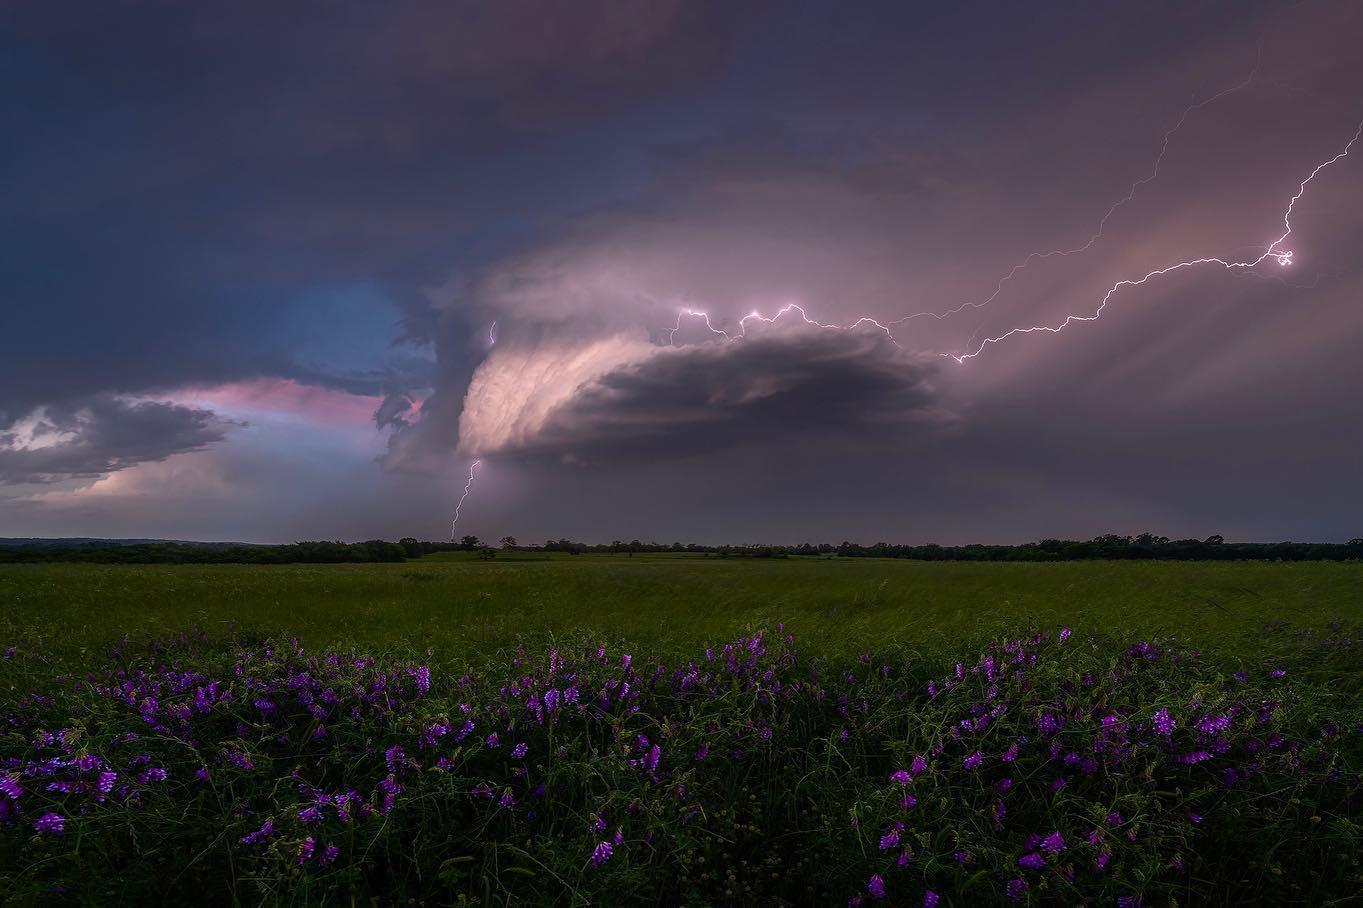  风暴，来自摄影师Ryan Dyar。 